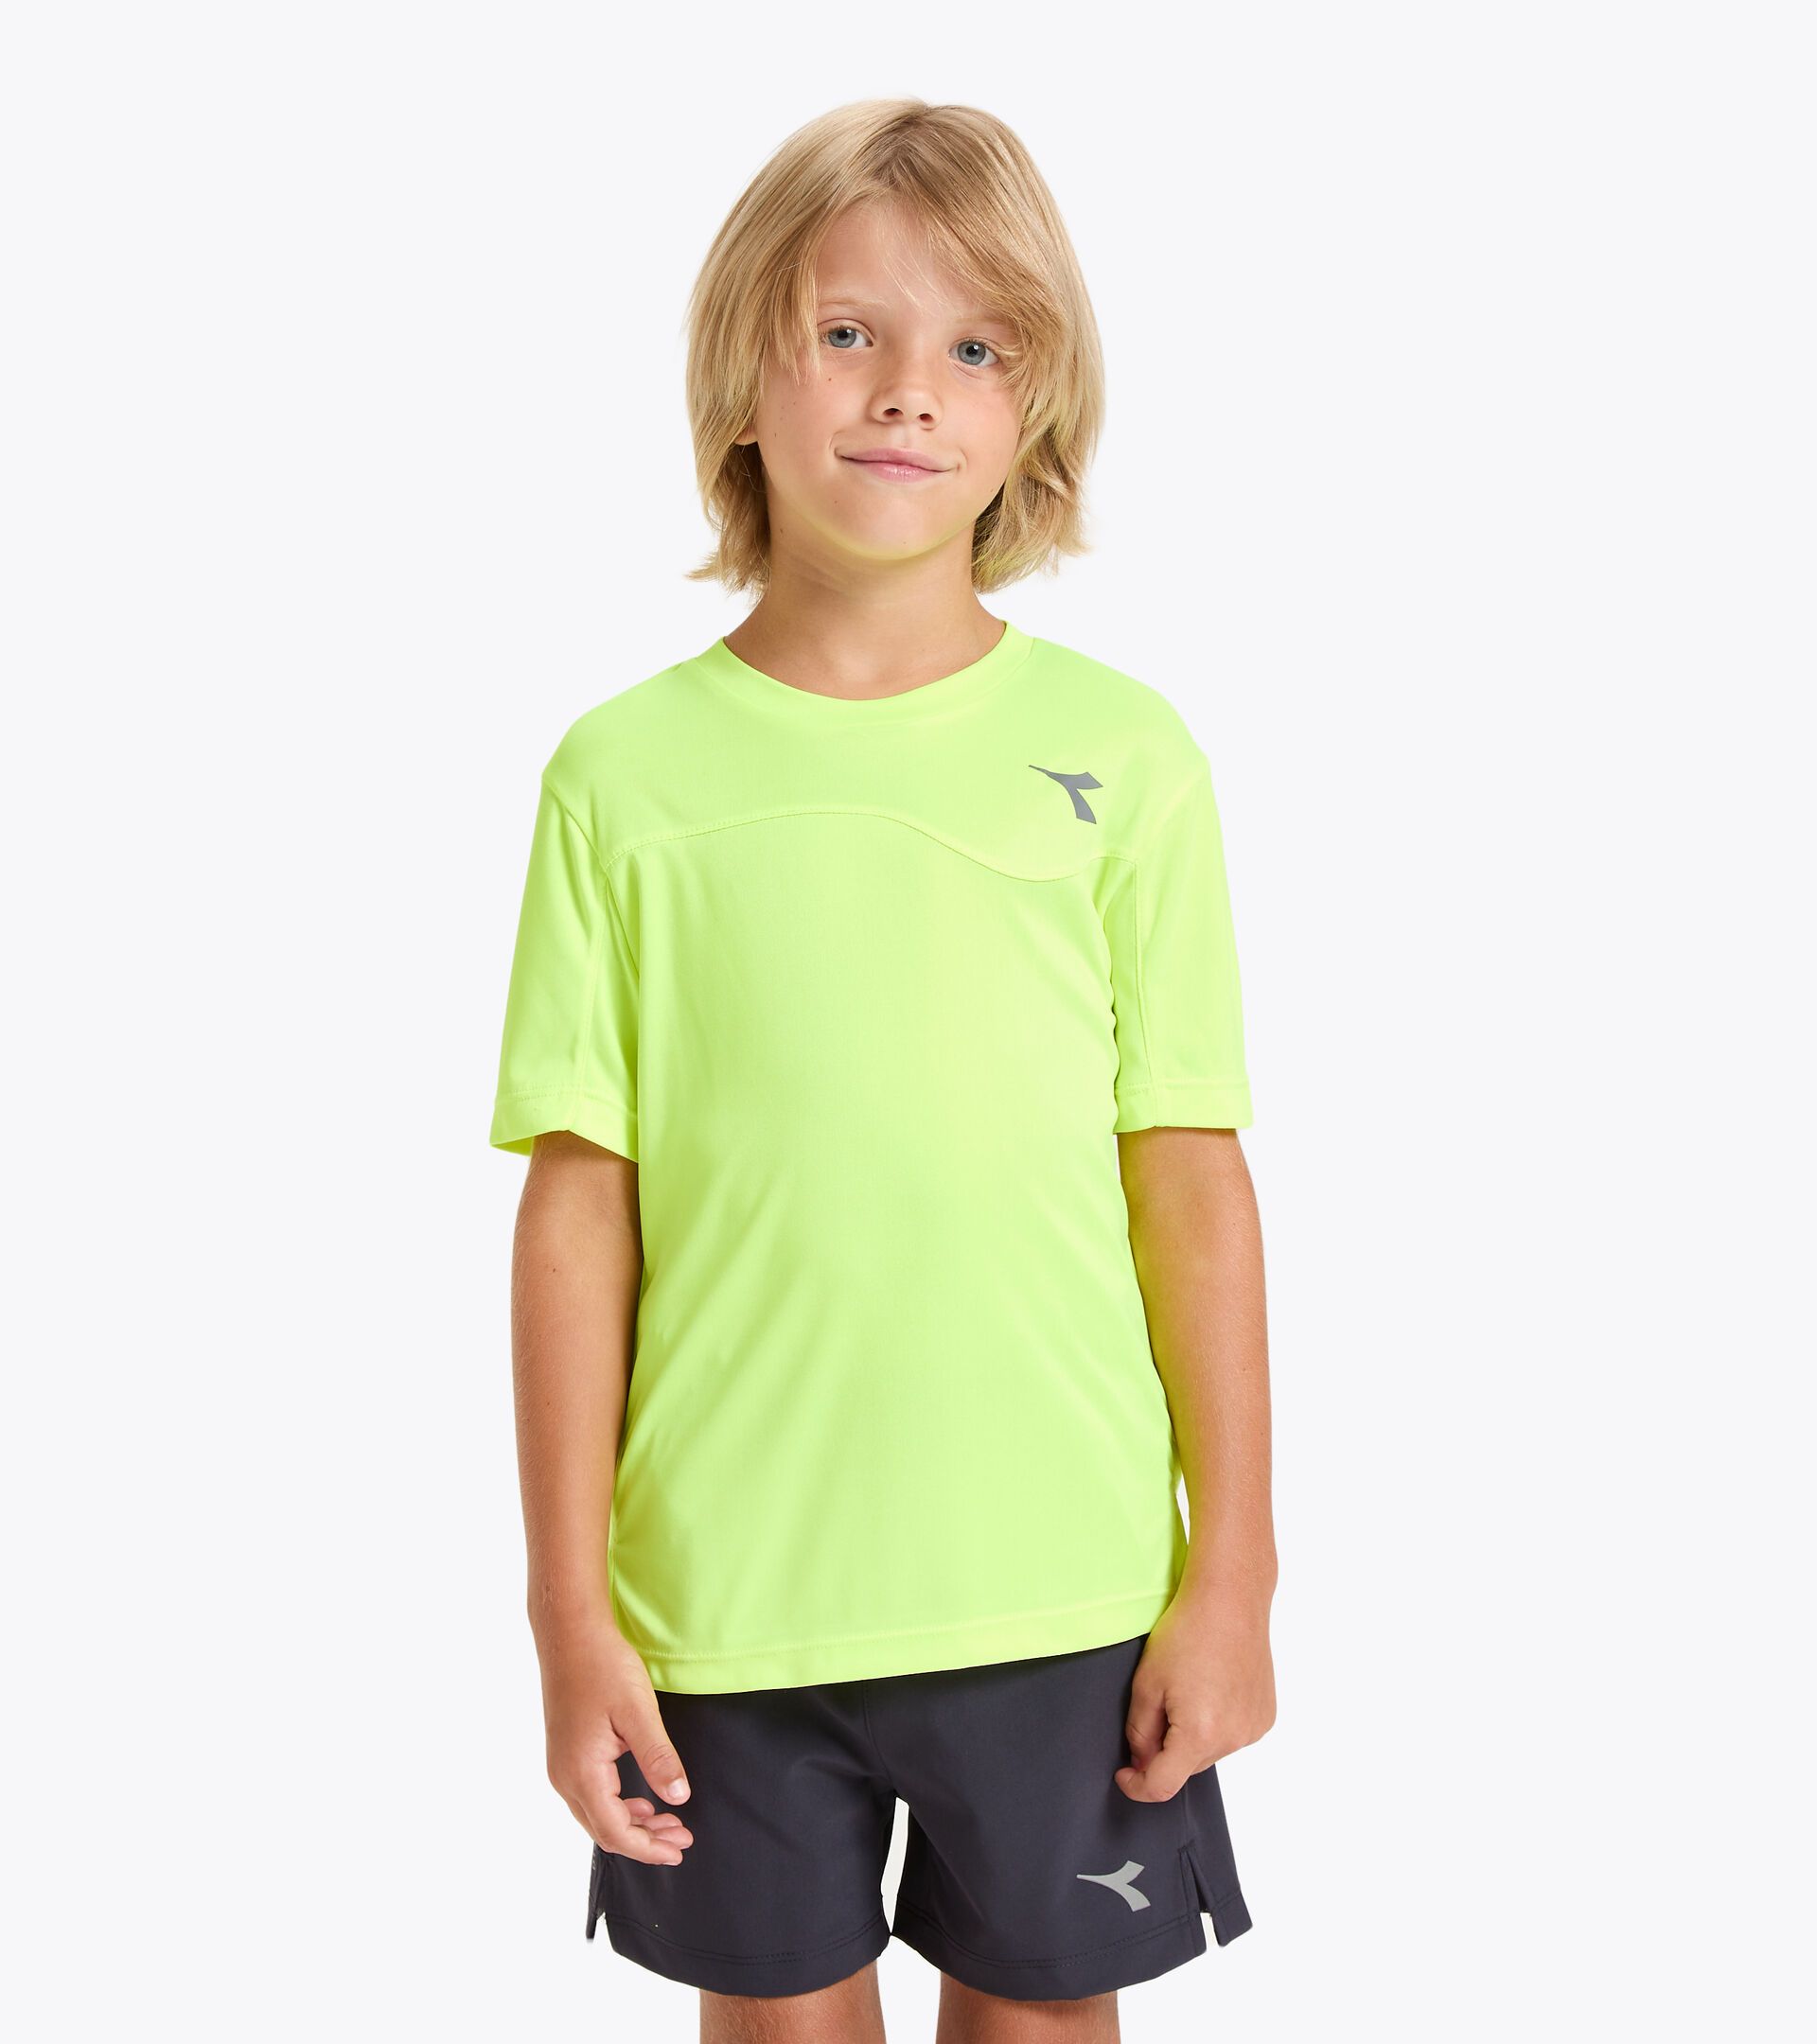 vervolging biologisch Vertrouwen op J. T-SHIRT TEAM Tennis T-shirt - Junior - Diadora Online Store US